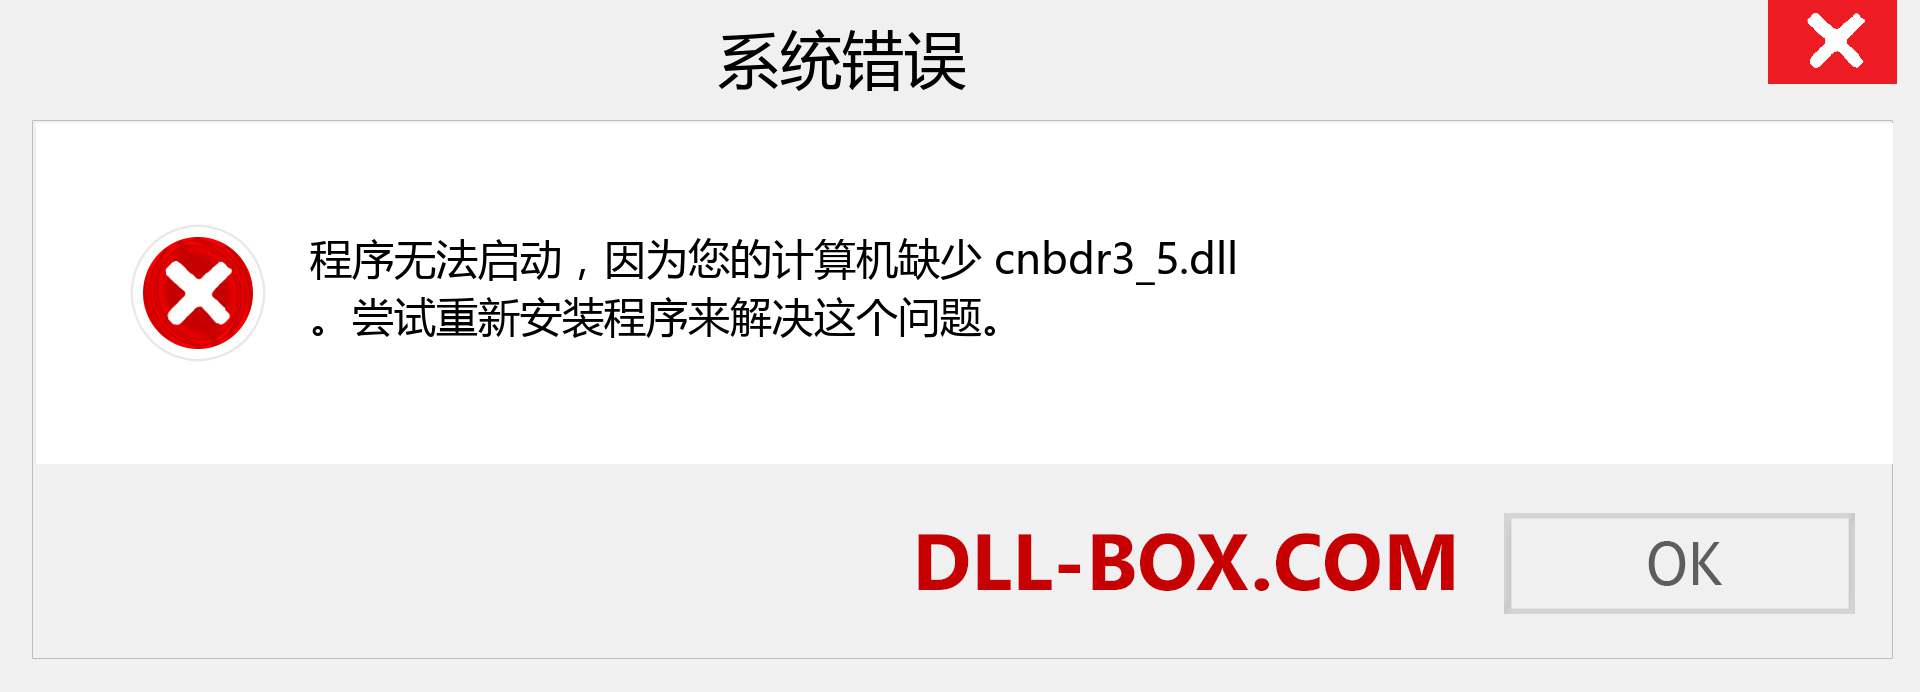 cnbdr3_5.dll 文件丢失？。 适用于 Windows 7、8、10 的下载 - 修复 Windows、照片、图像上的 cnbdr3_5 dll 丢失错误